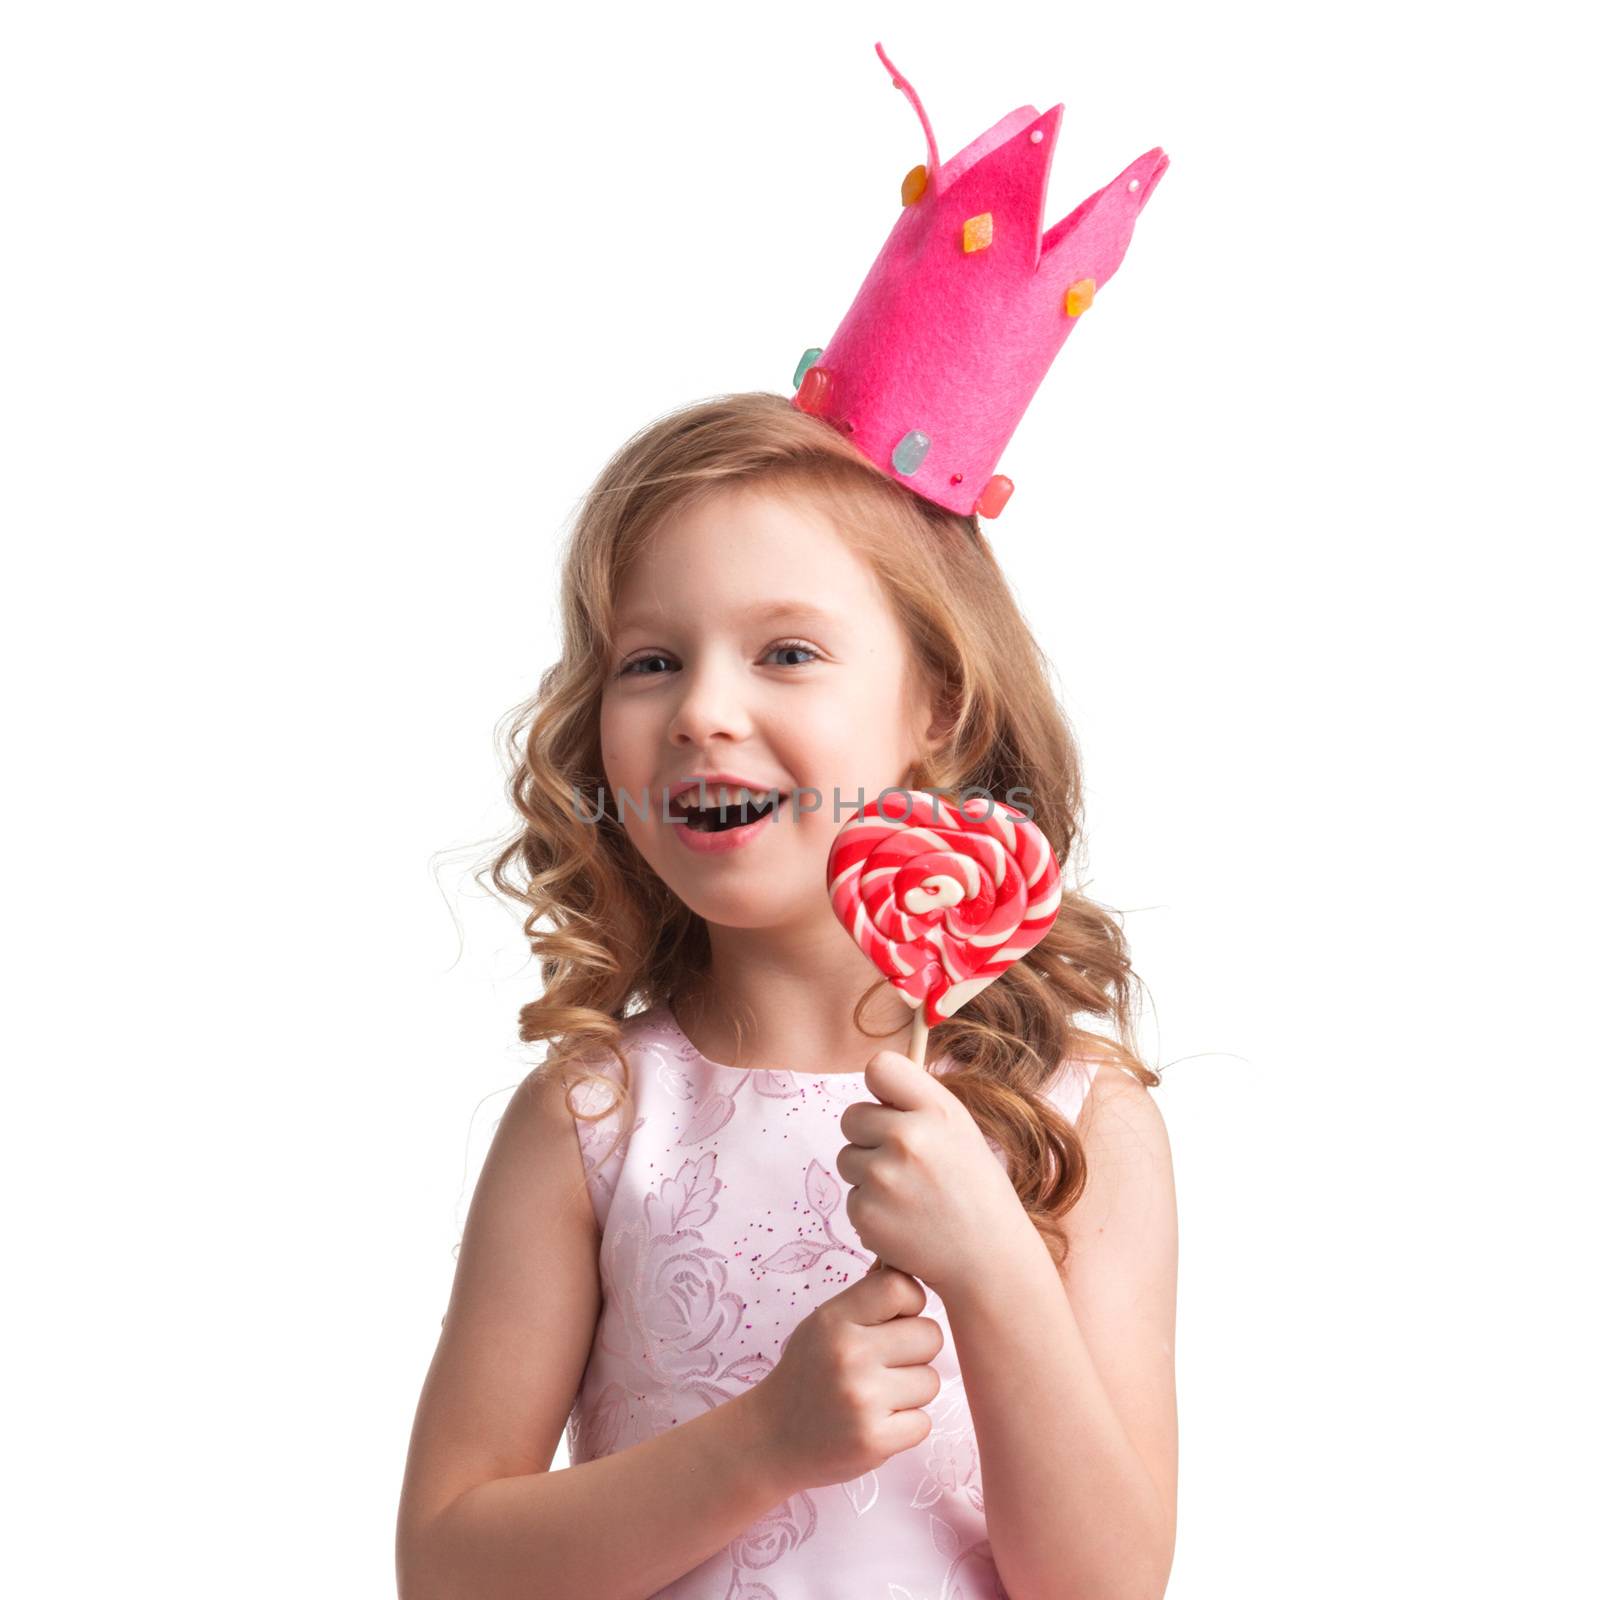 Girl in crown holding heart lollipop by Yellowj